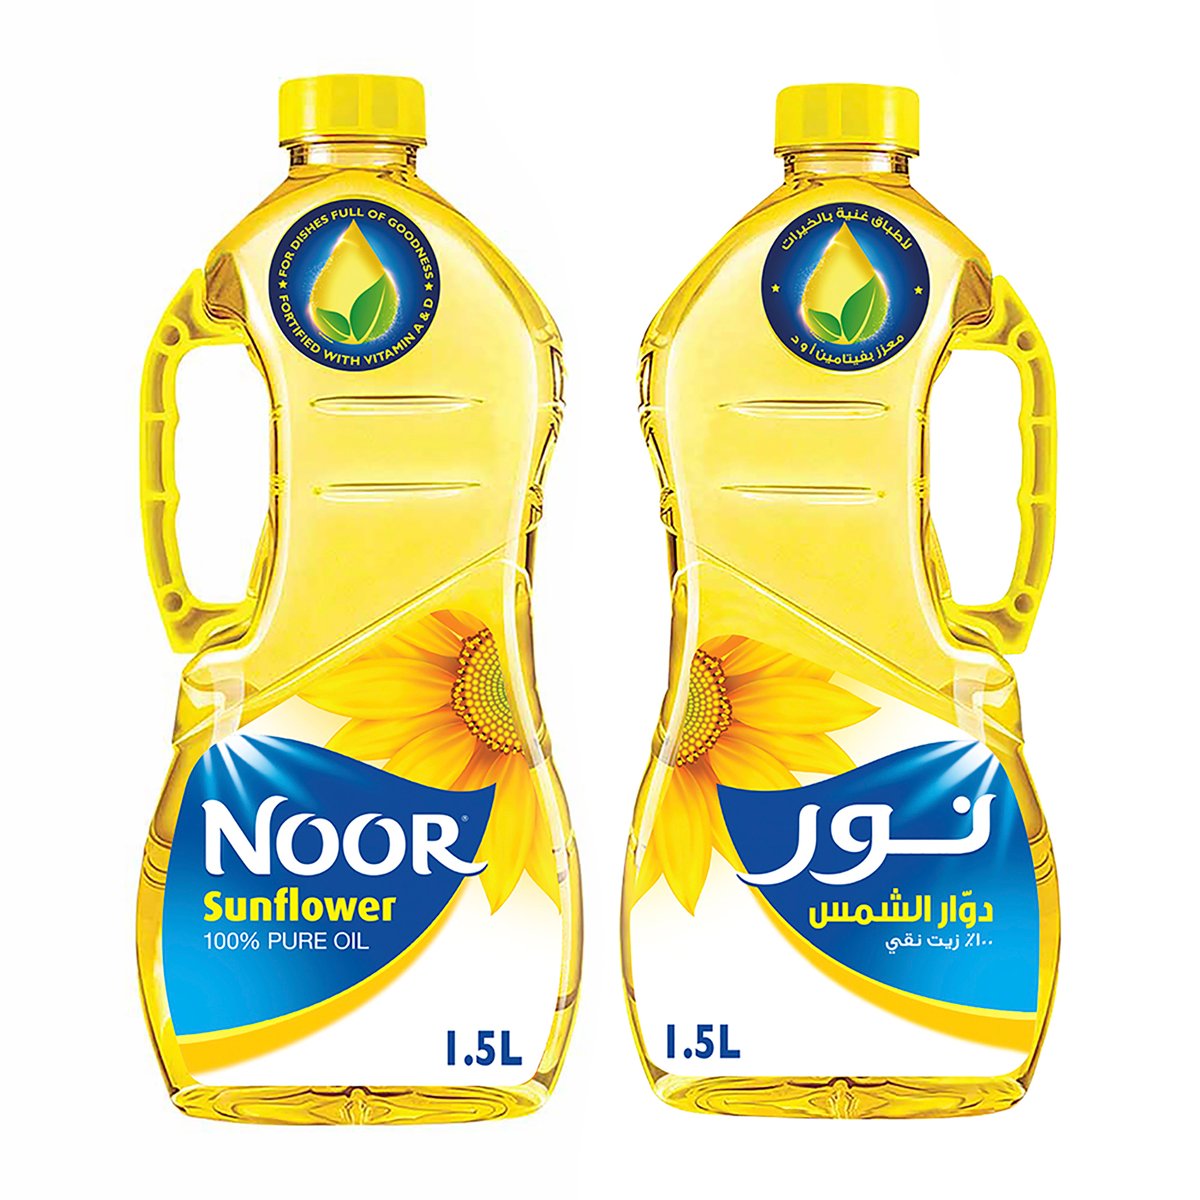 اشتري قم بشراء نور زيت دوار الشمس 2 × 1.5 لتر Online at Best Price من الموقع - من لولو هايبر ماركت Sunflower Oil في الكويت